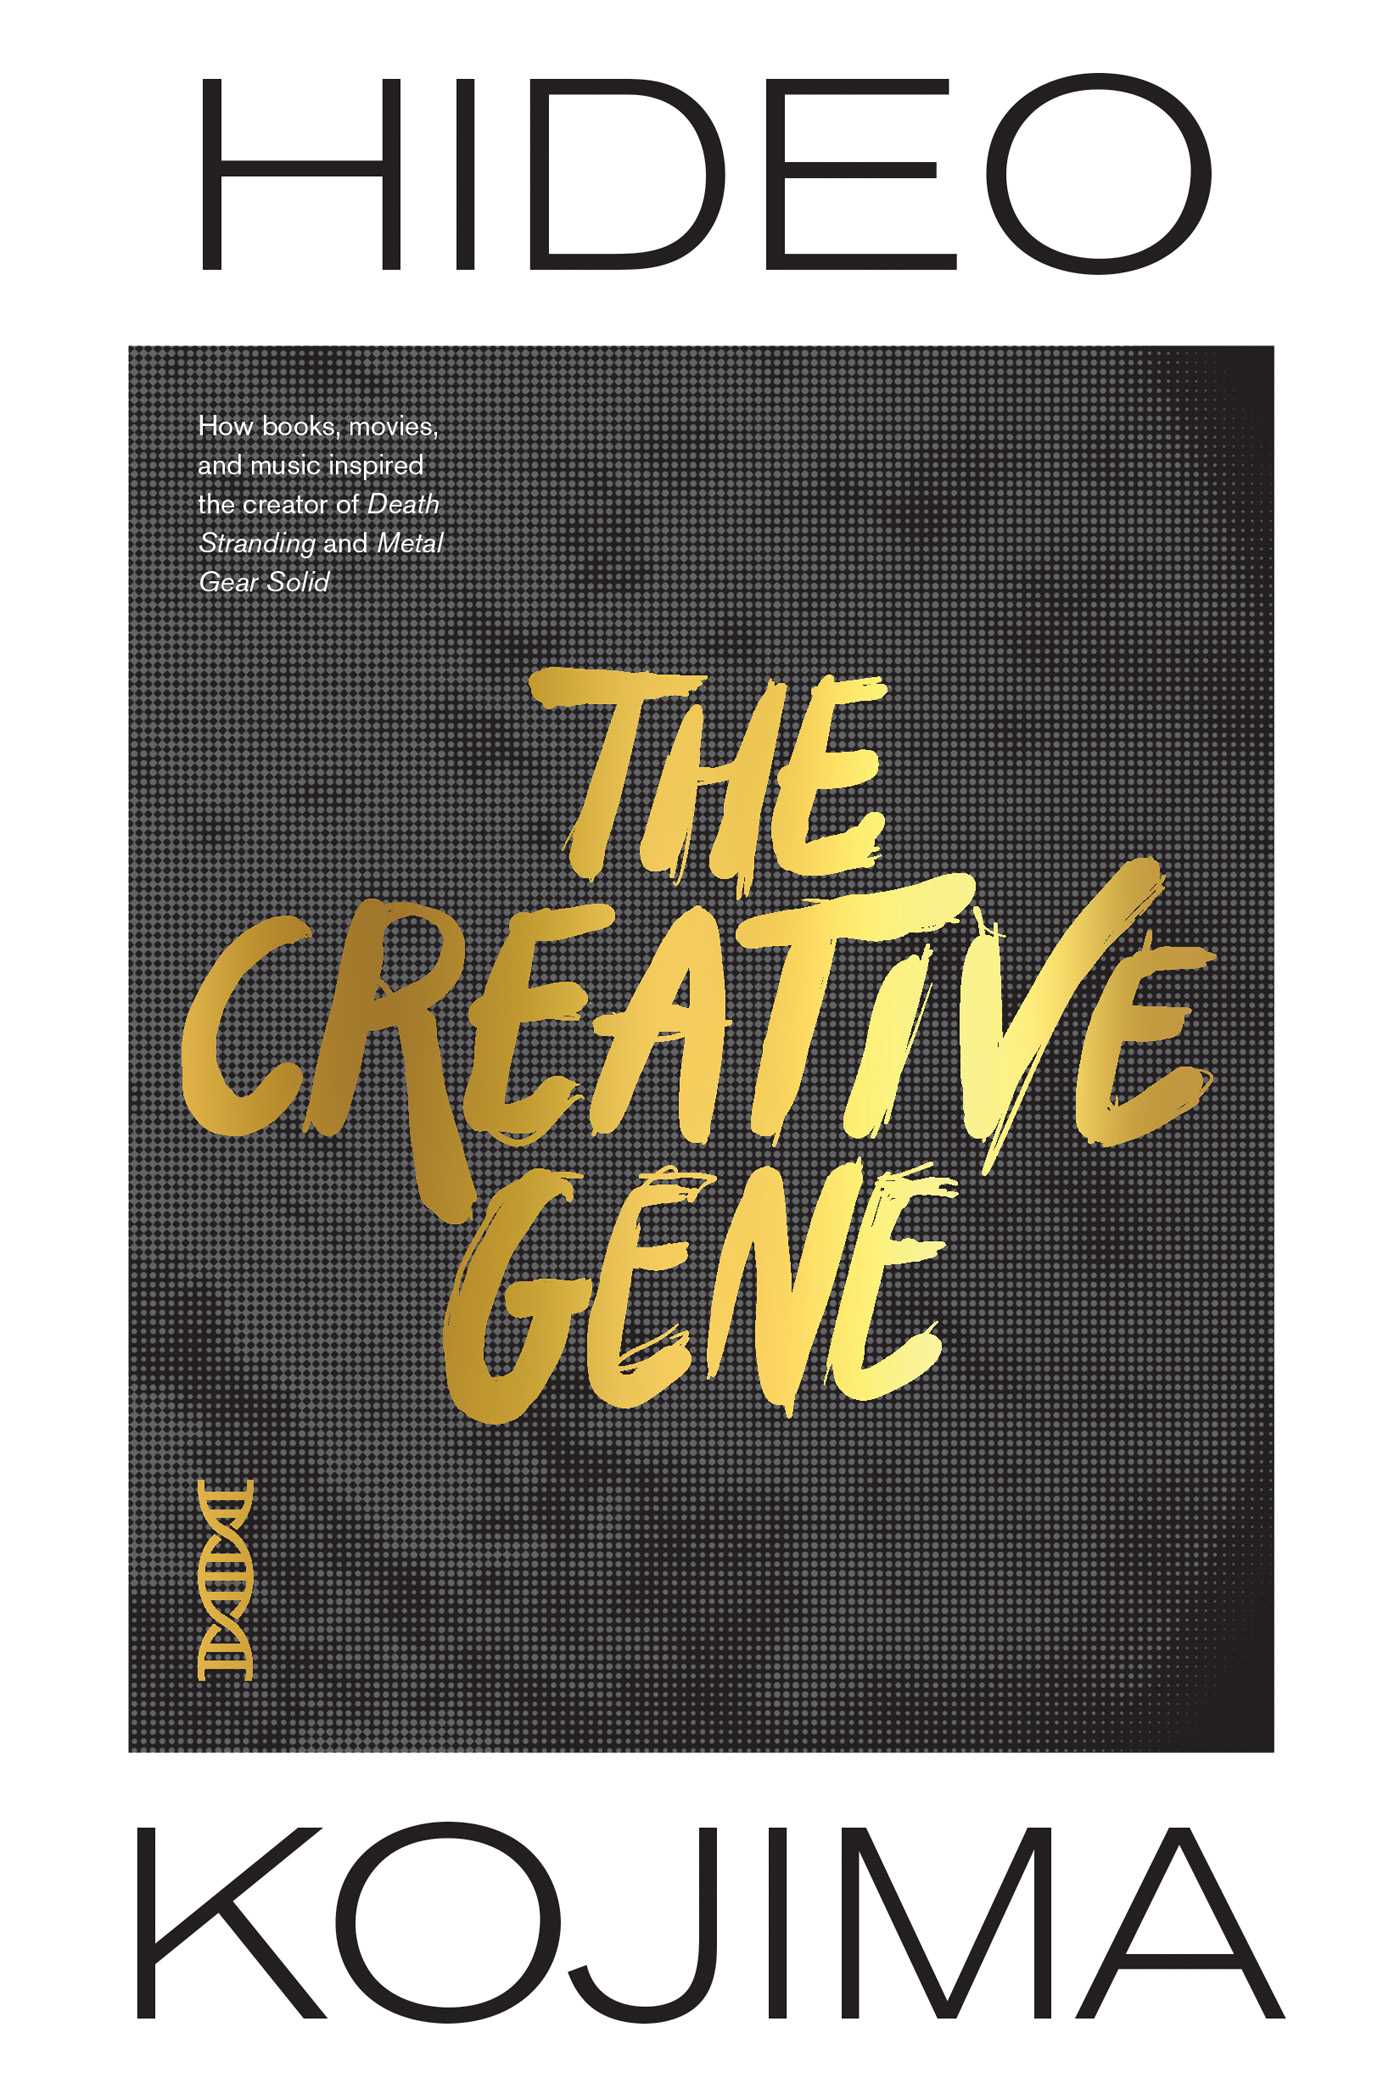 Hideo Kojima: Creative Gene (2021, Viz Media)